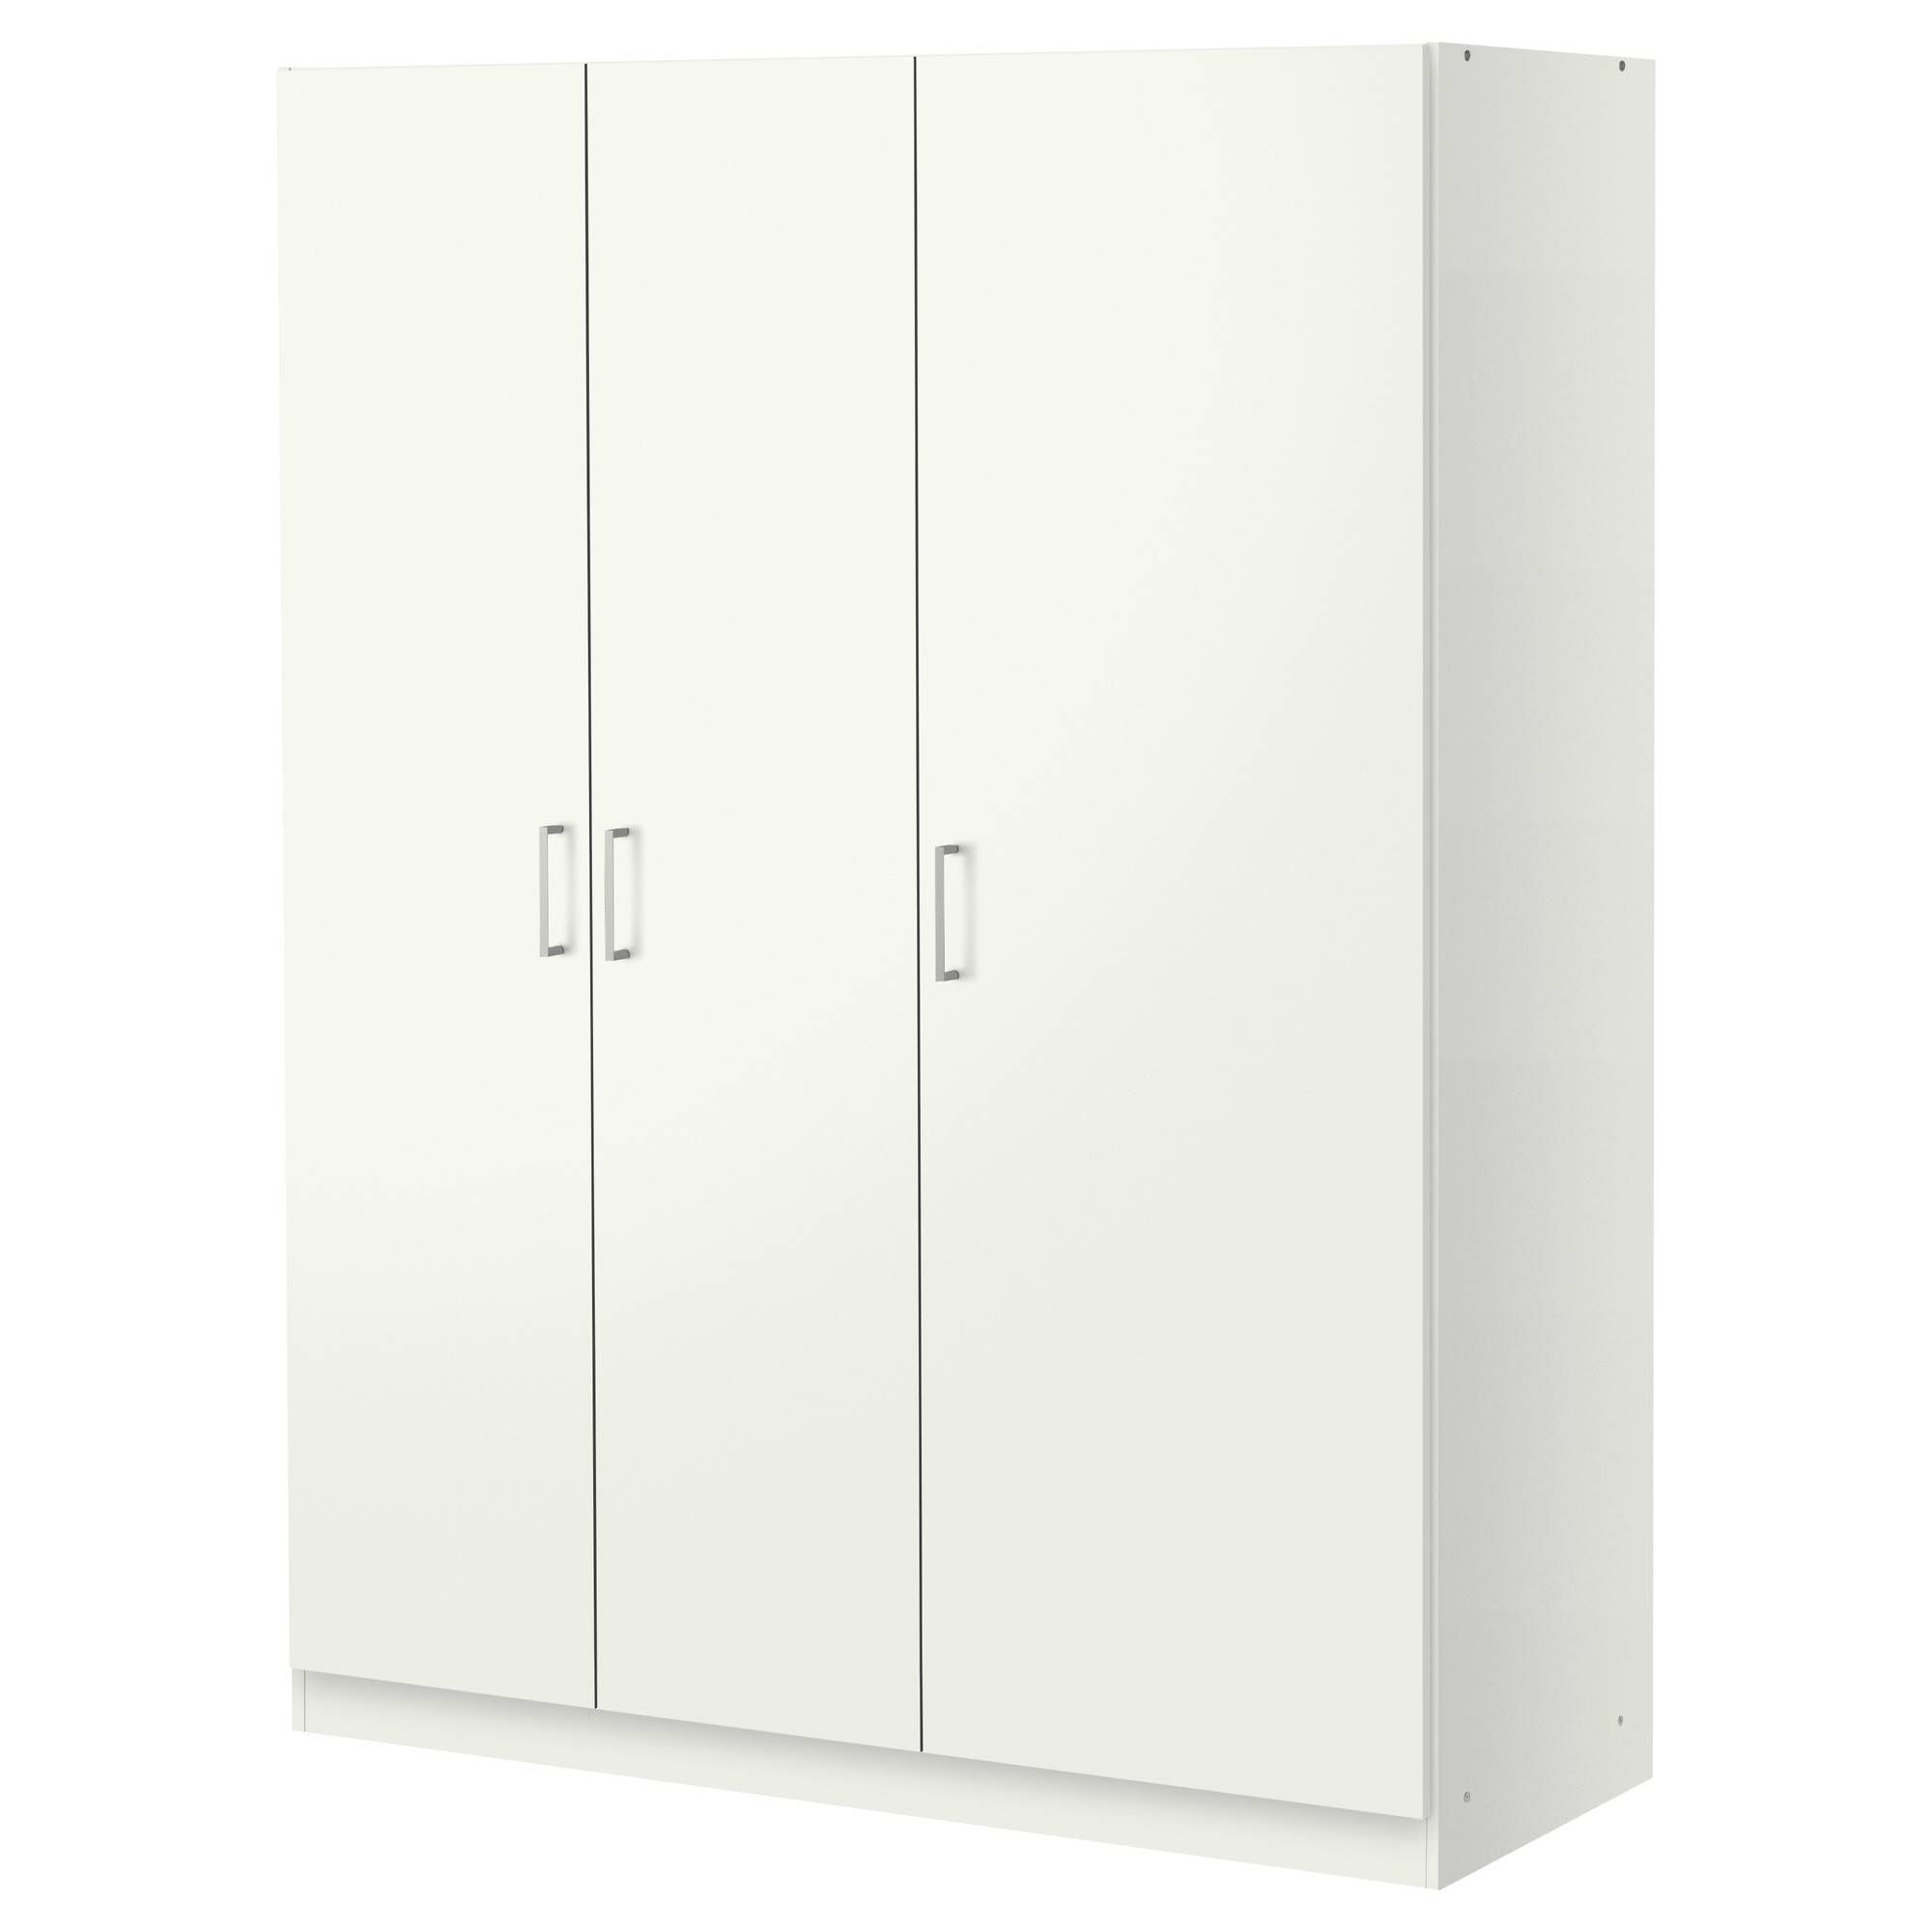 Dombås Wardrobe White 140x181 Cm – Ikea Pertaining To Double Rail Wardrobes Argos (View 21 of 30)